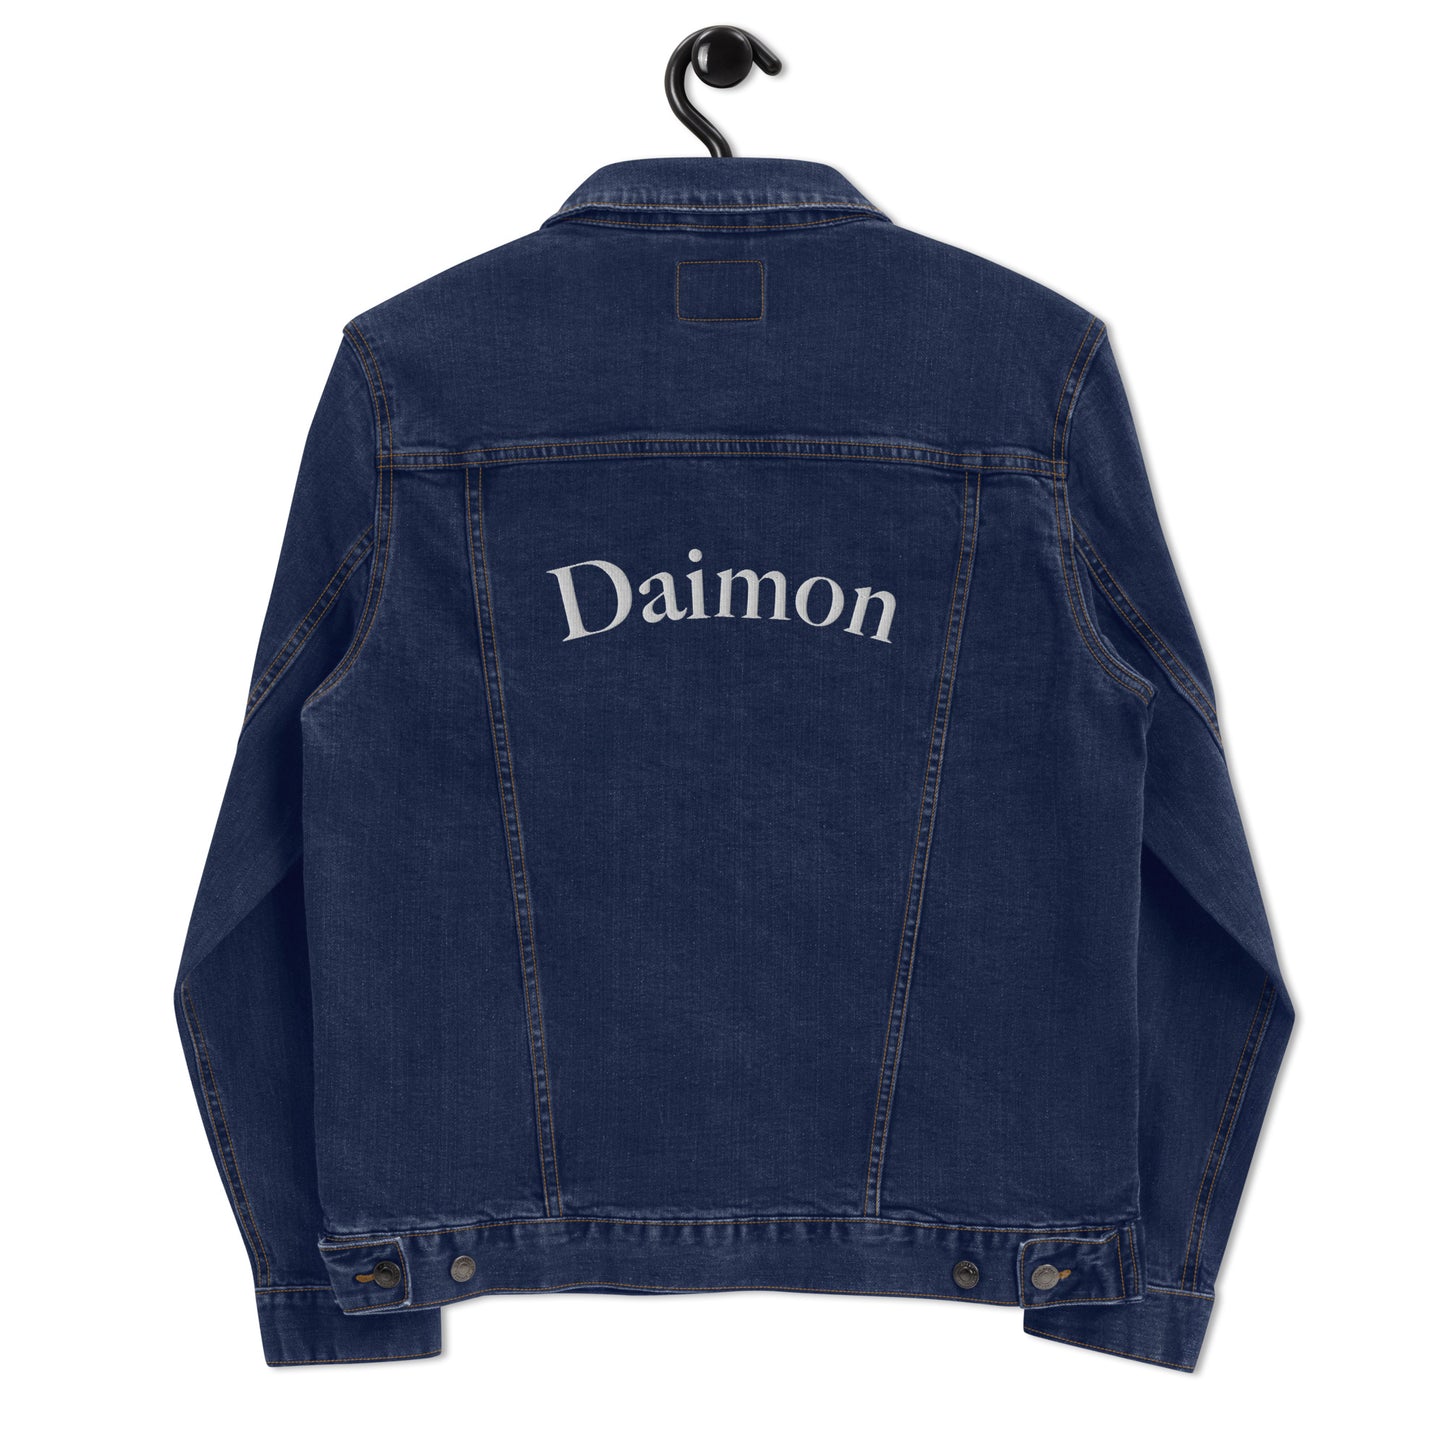 Daímon 'blood eyes' jacket